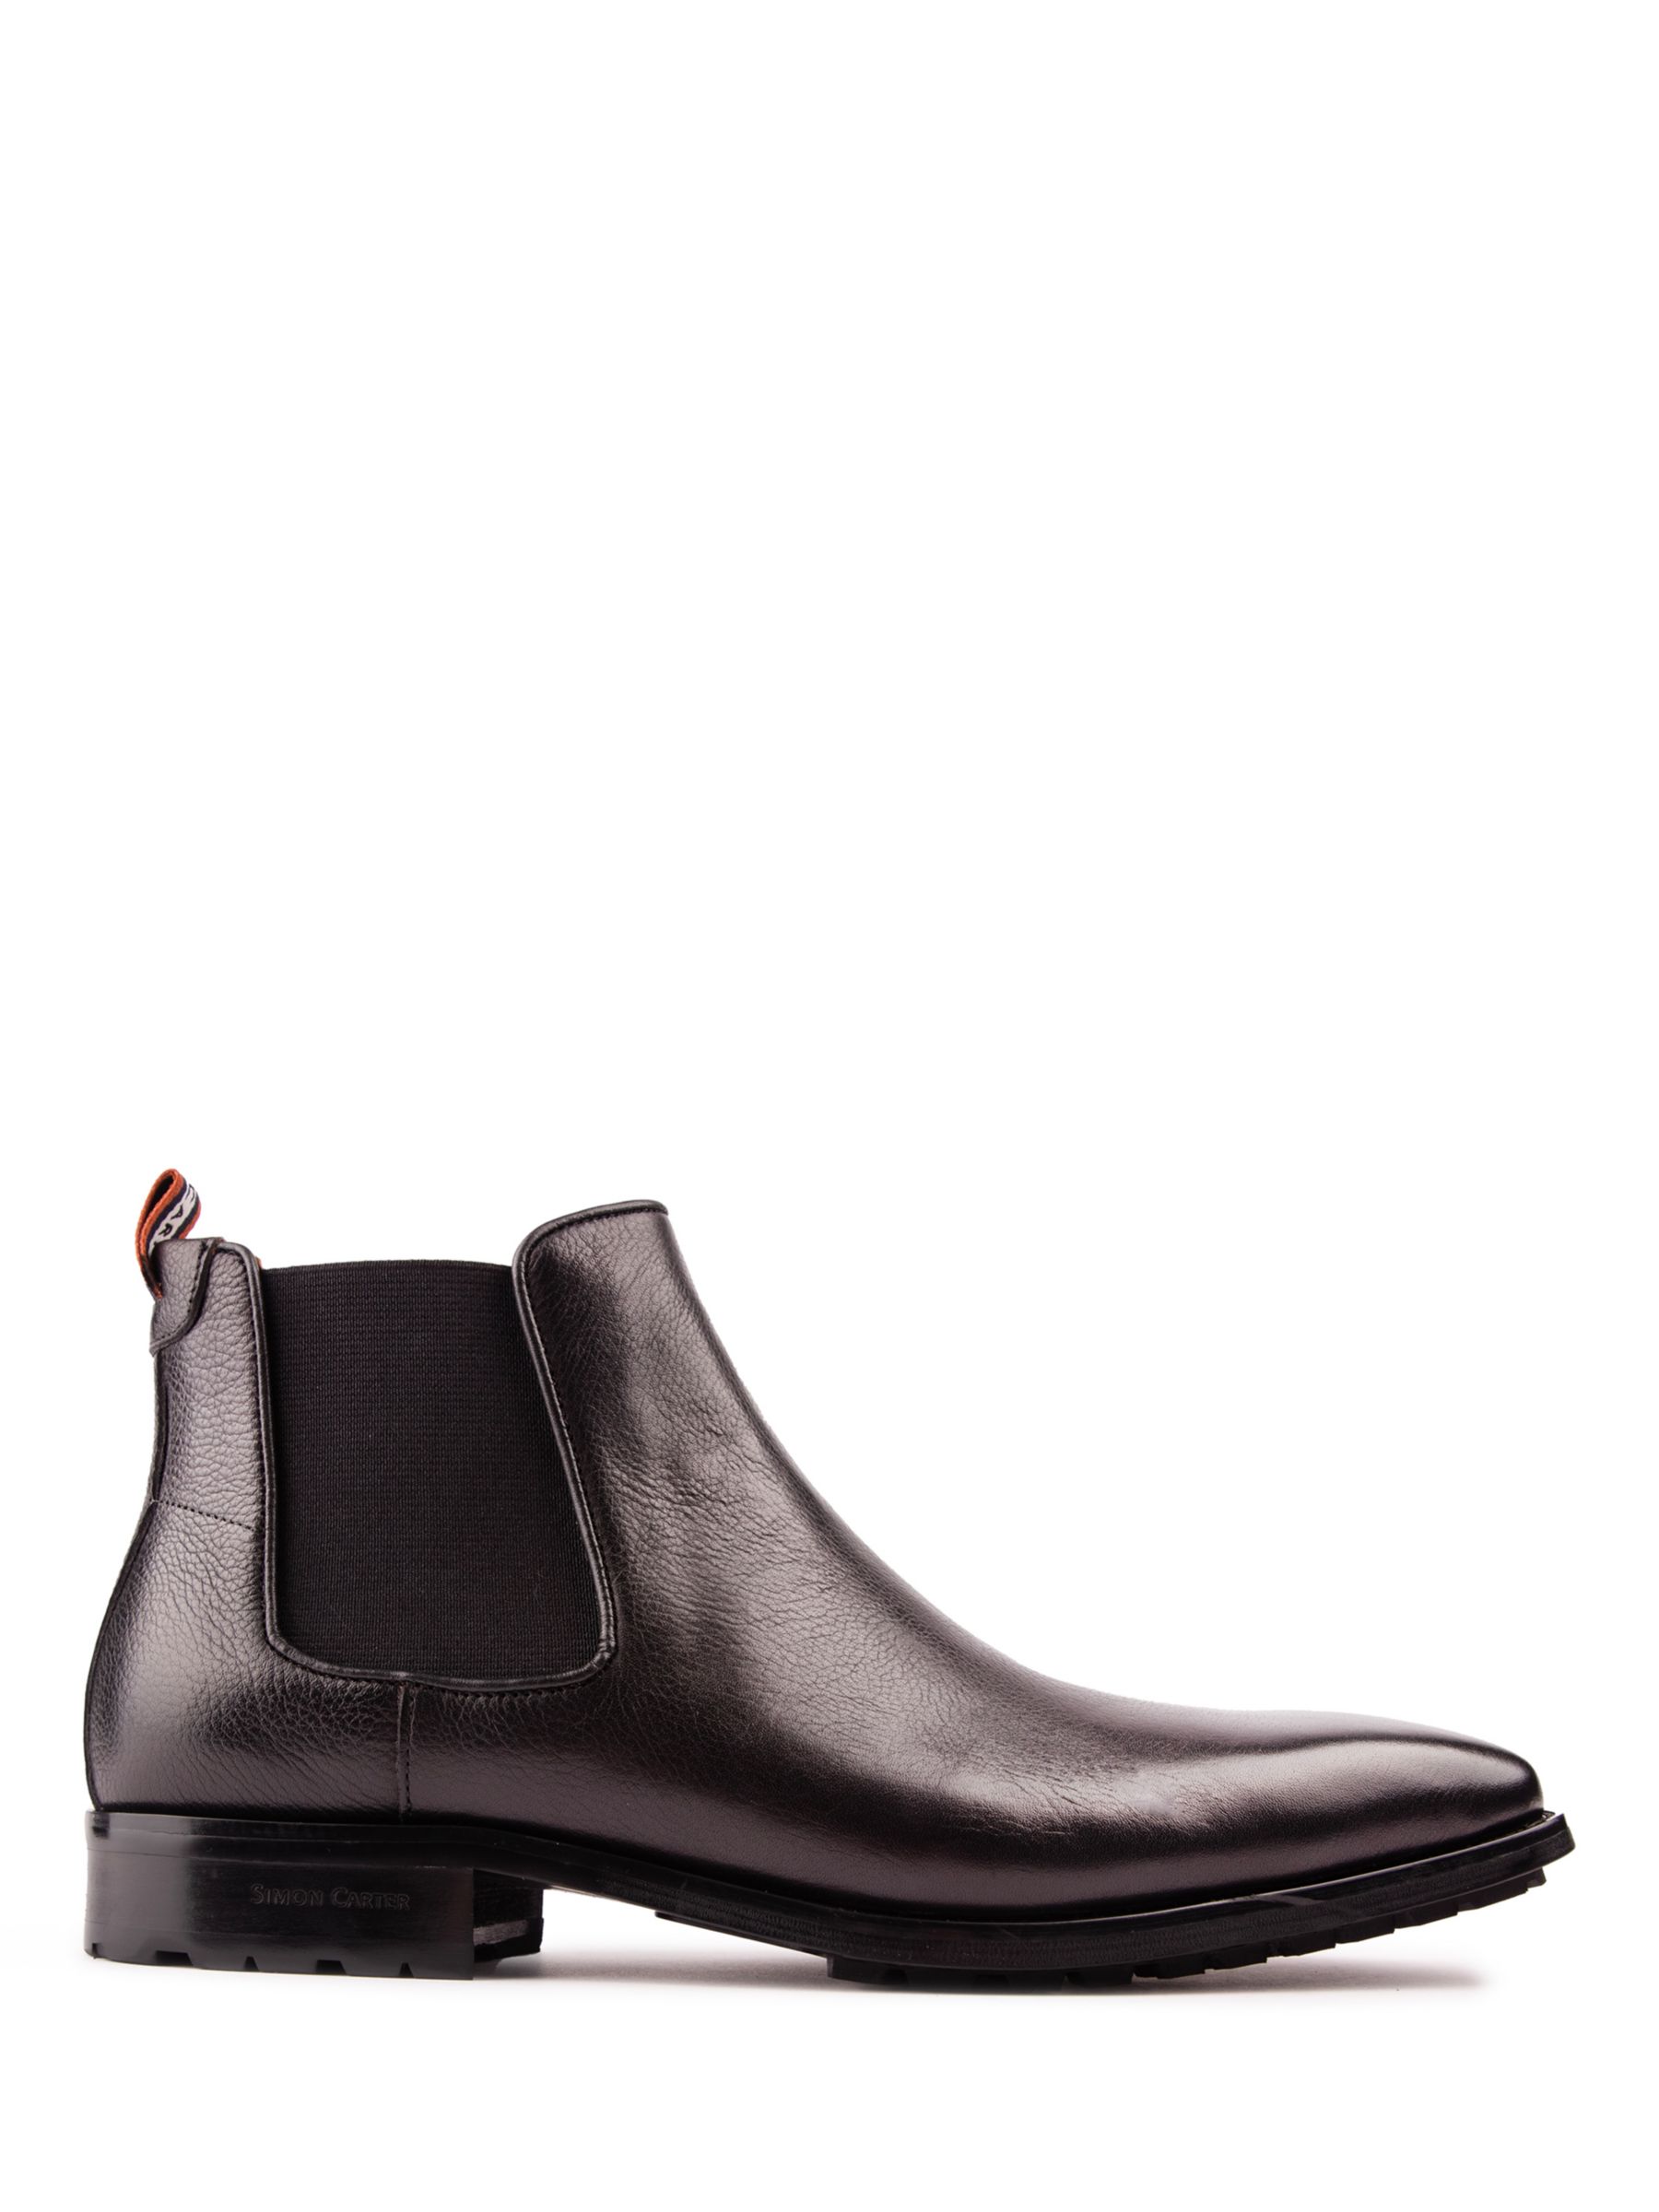 Кожаные ботинки челси Clover Simon Carter, черный ботинки челси мужские из флока классические ботинки ручной работы без застежки черные